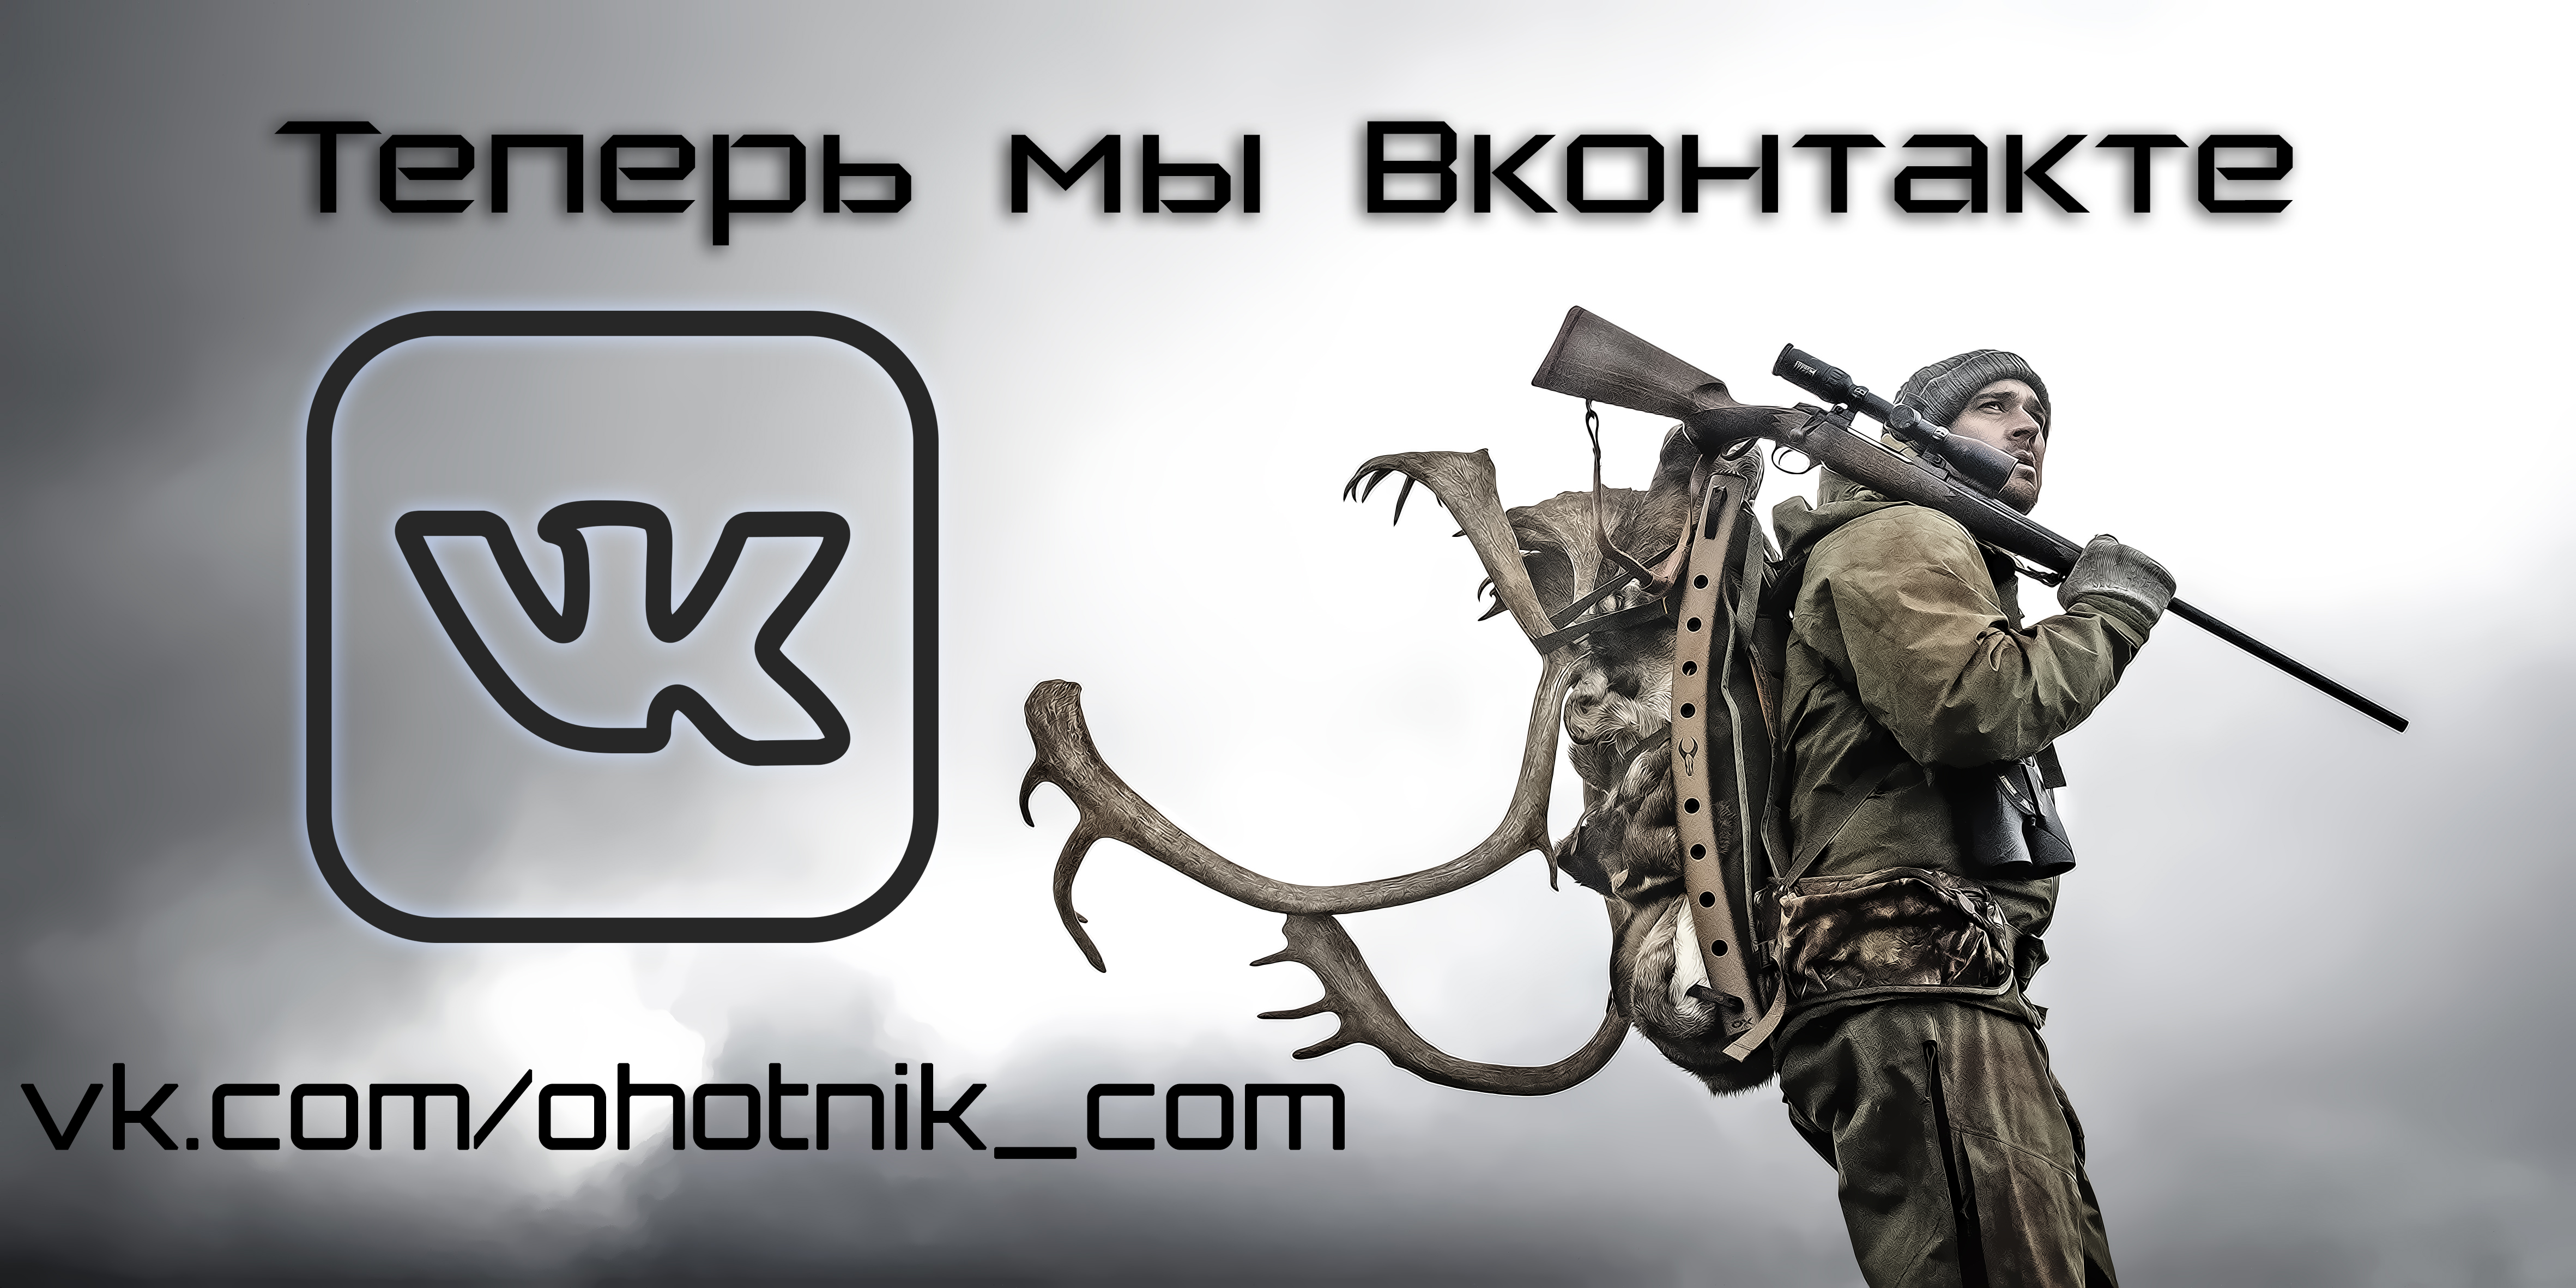 Интернет-магазин Охотник в Вконтакте